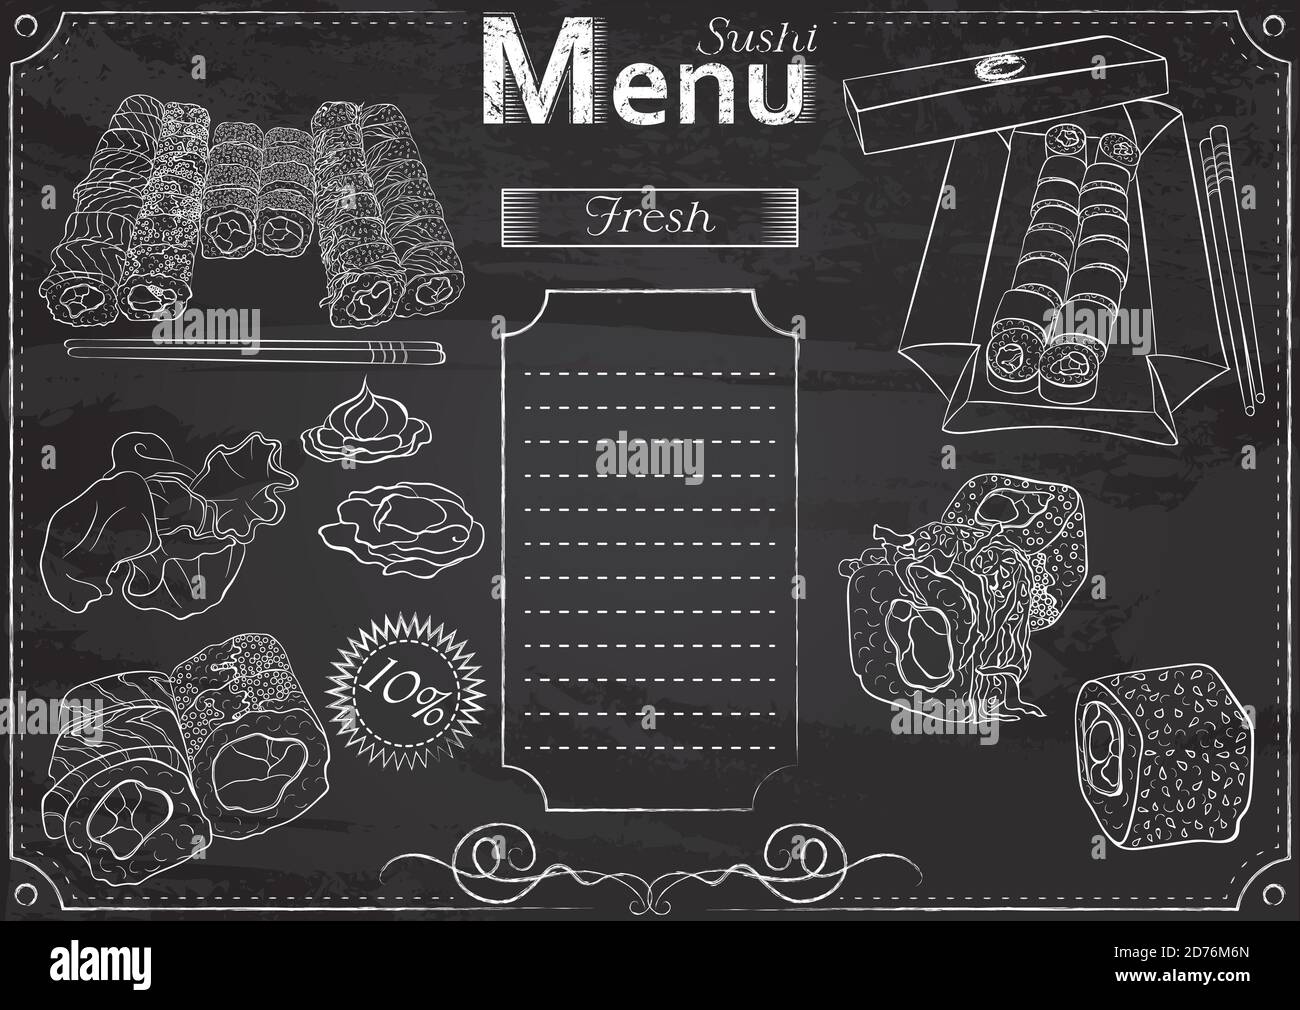 Modello vettoriale con elementi sushi per menu stilizzato come disegno di gesso su lavagna.Design per un ristorante, caffè o bar. Cucina tradizionale giapponese. Illustrazione Vettoriale